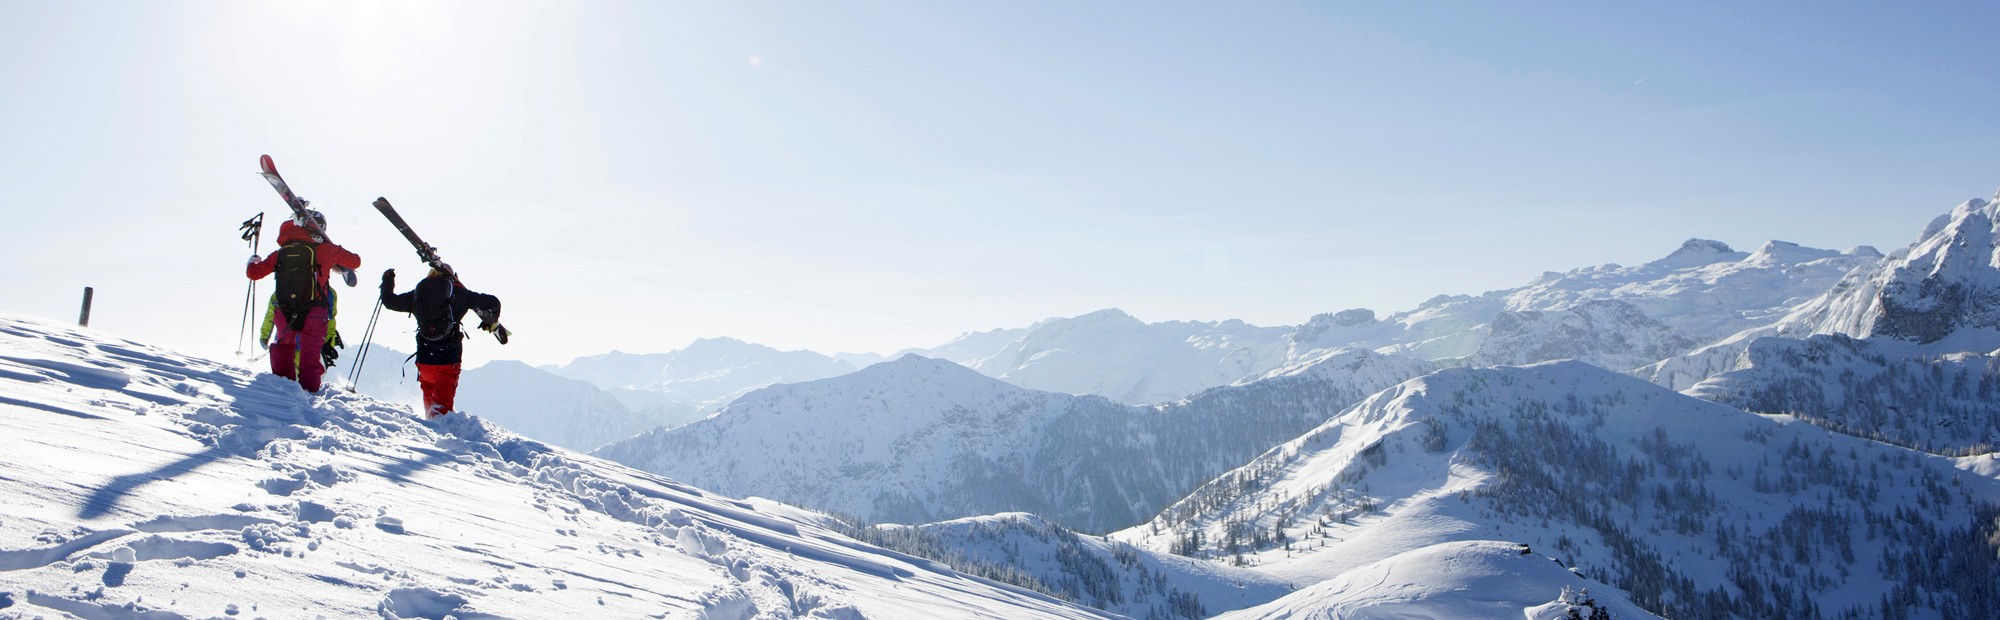 Skifahren in Wagrain, traumhafte Aussicht auf die Salzburger Bergwelt © TVB Wagrain Kleinarl